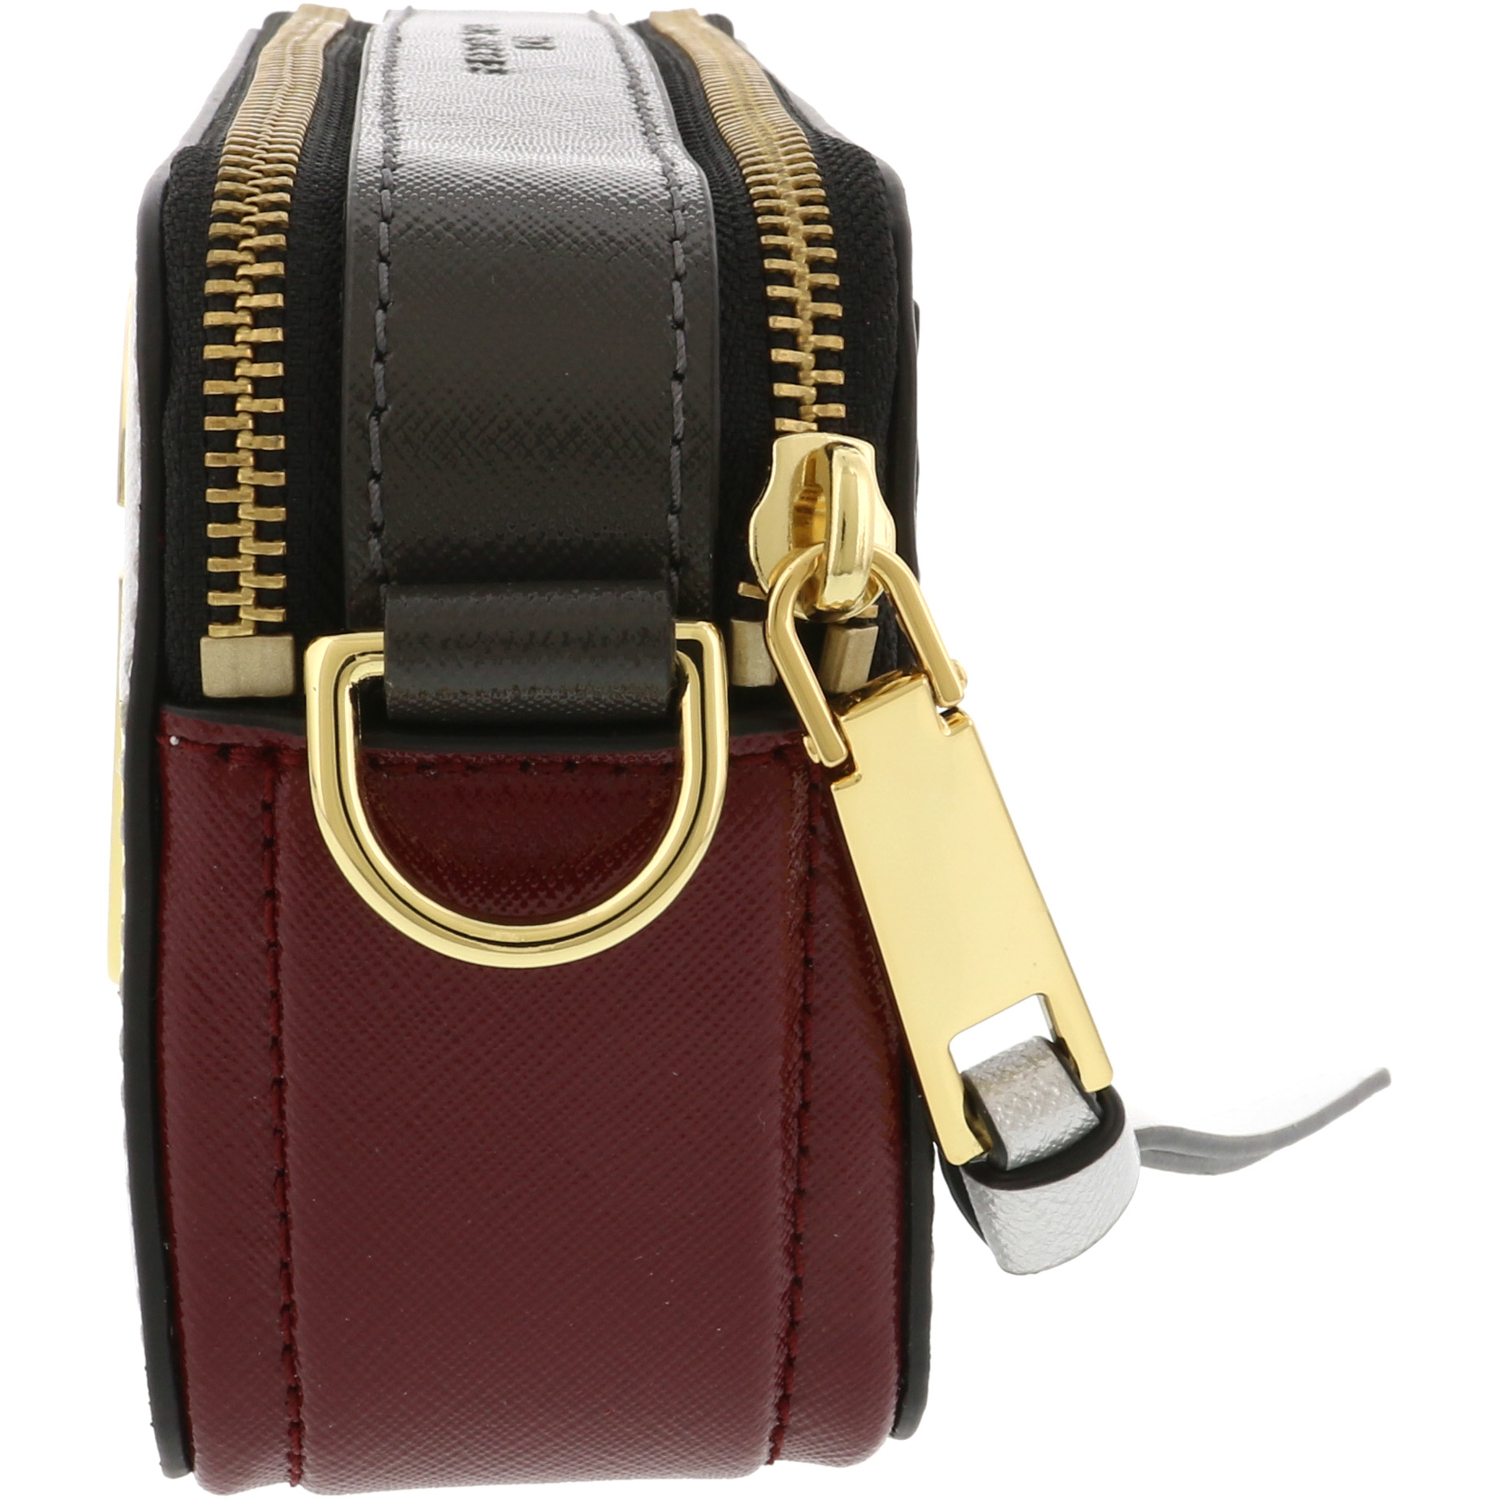 Marc Jacobs Snapshot Leather Shoulder Bag | eBay